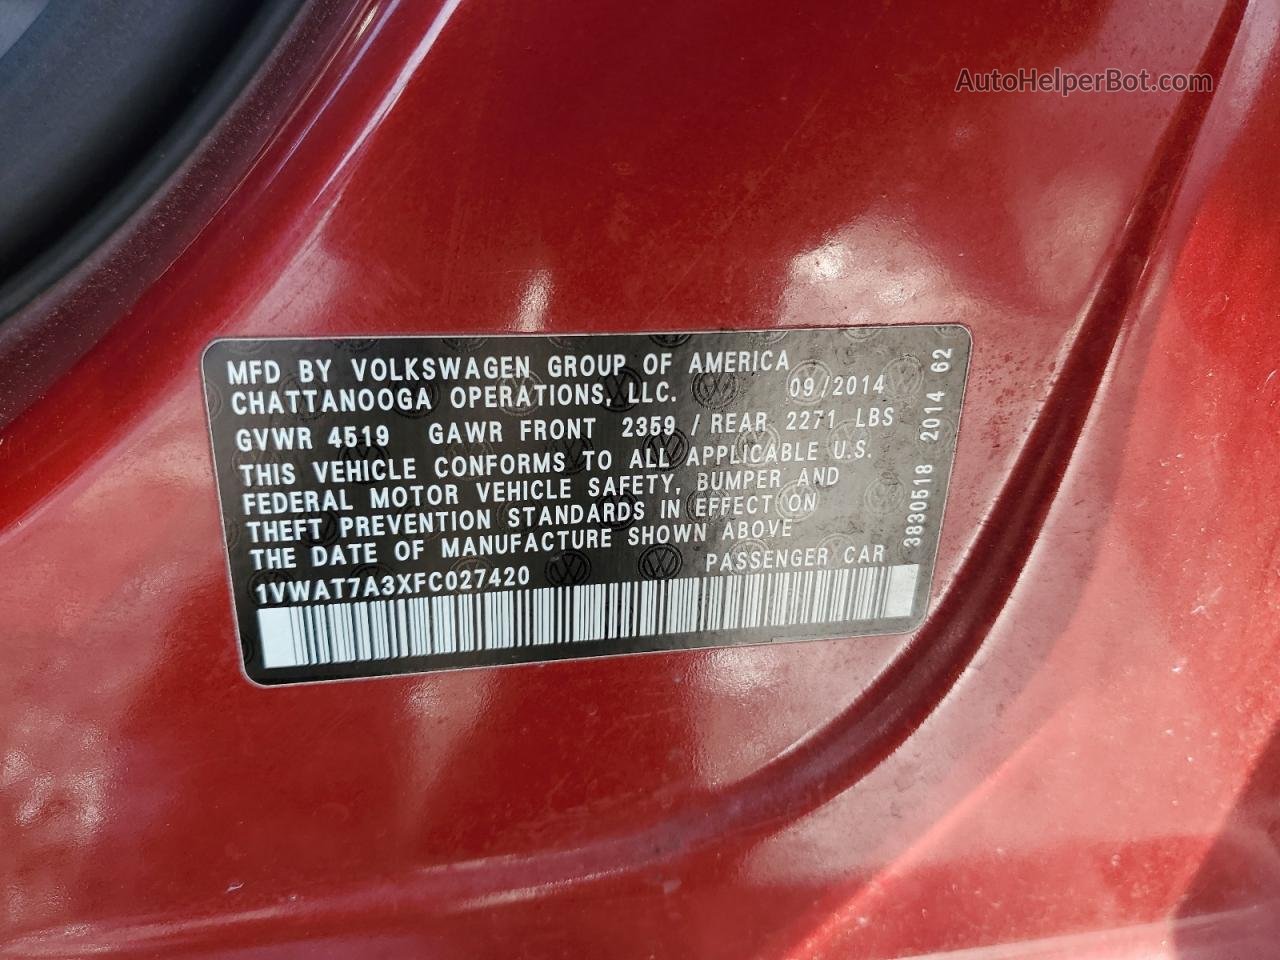 2015 Volkswagen Passat S Red vin: 1VWAT7A3XFC027420